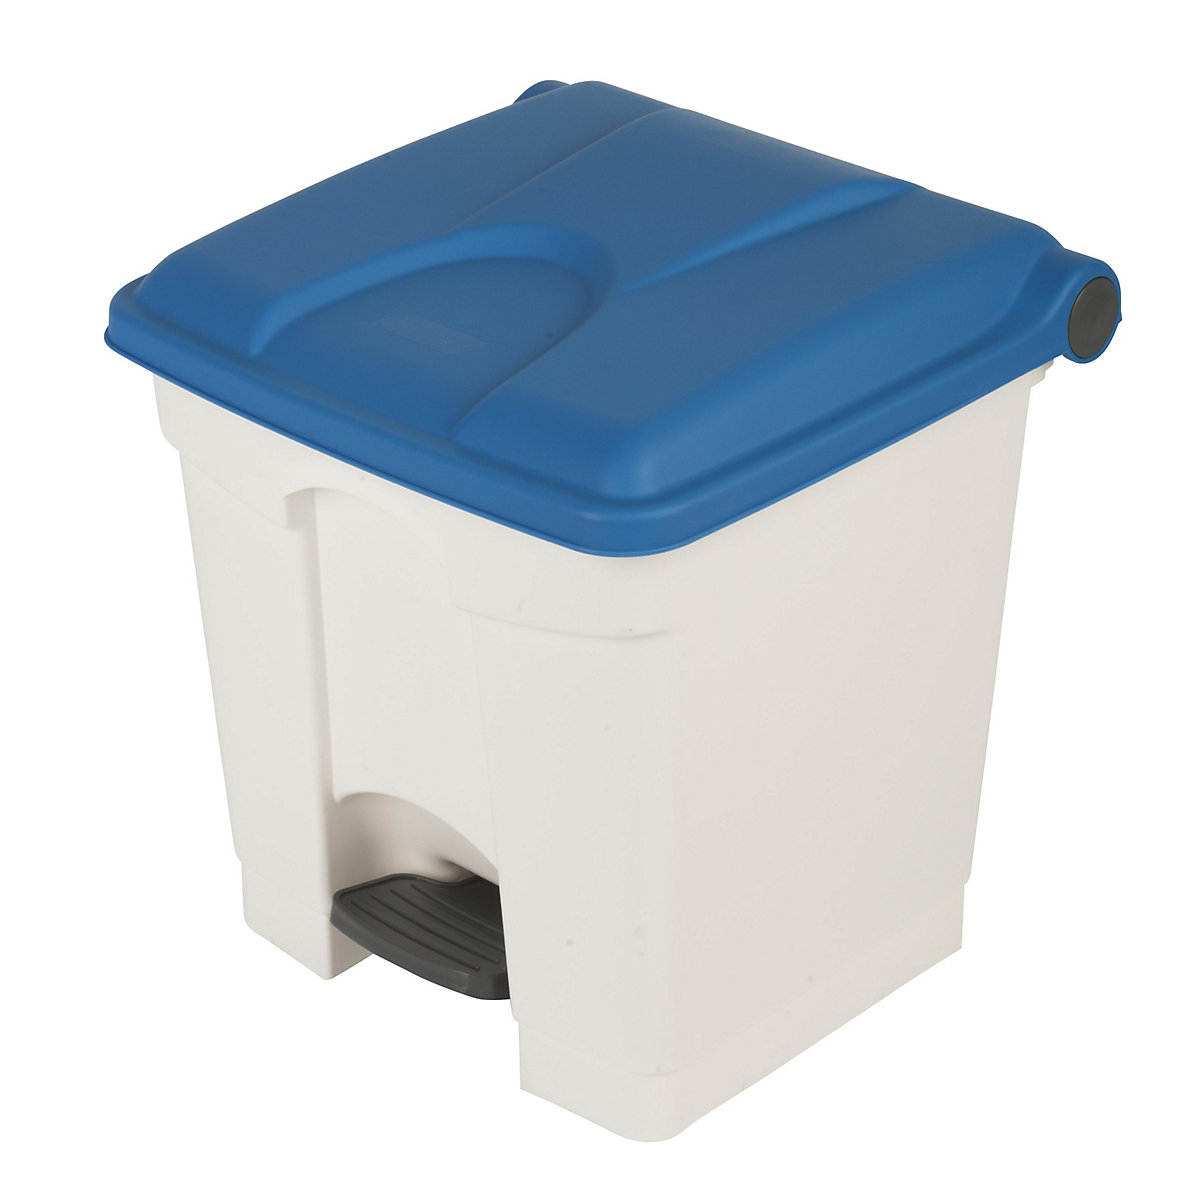 EUROKRAFTbasic – Nádoba na odpad s pedálem, objem 30 l, š x v x h 410 x 435 x 400 mm, bílá, modré víko